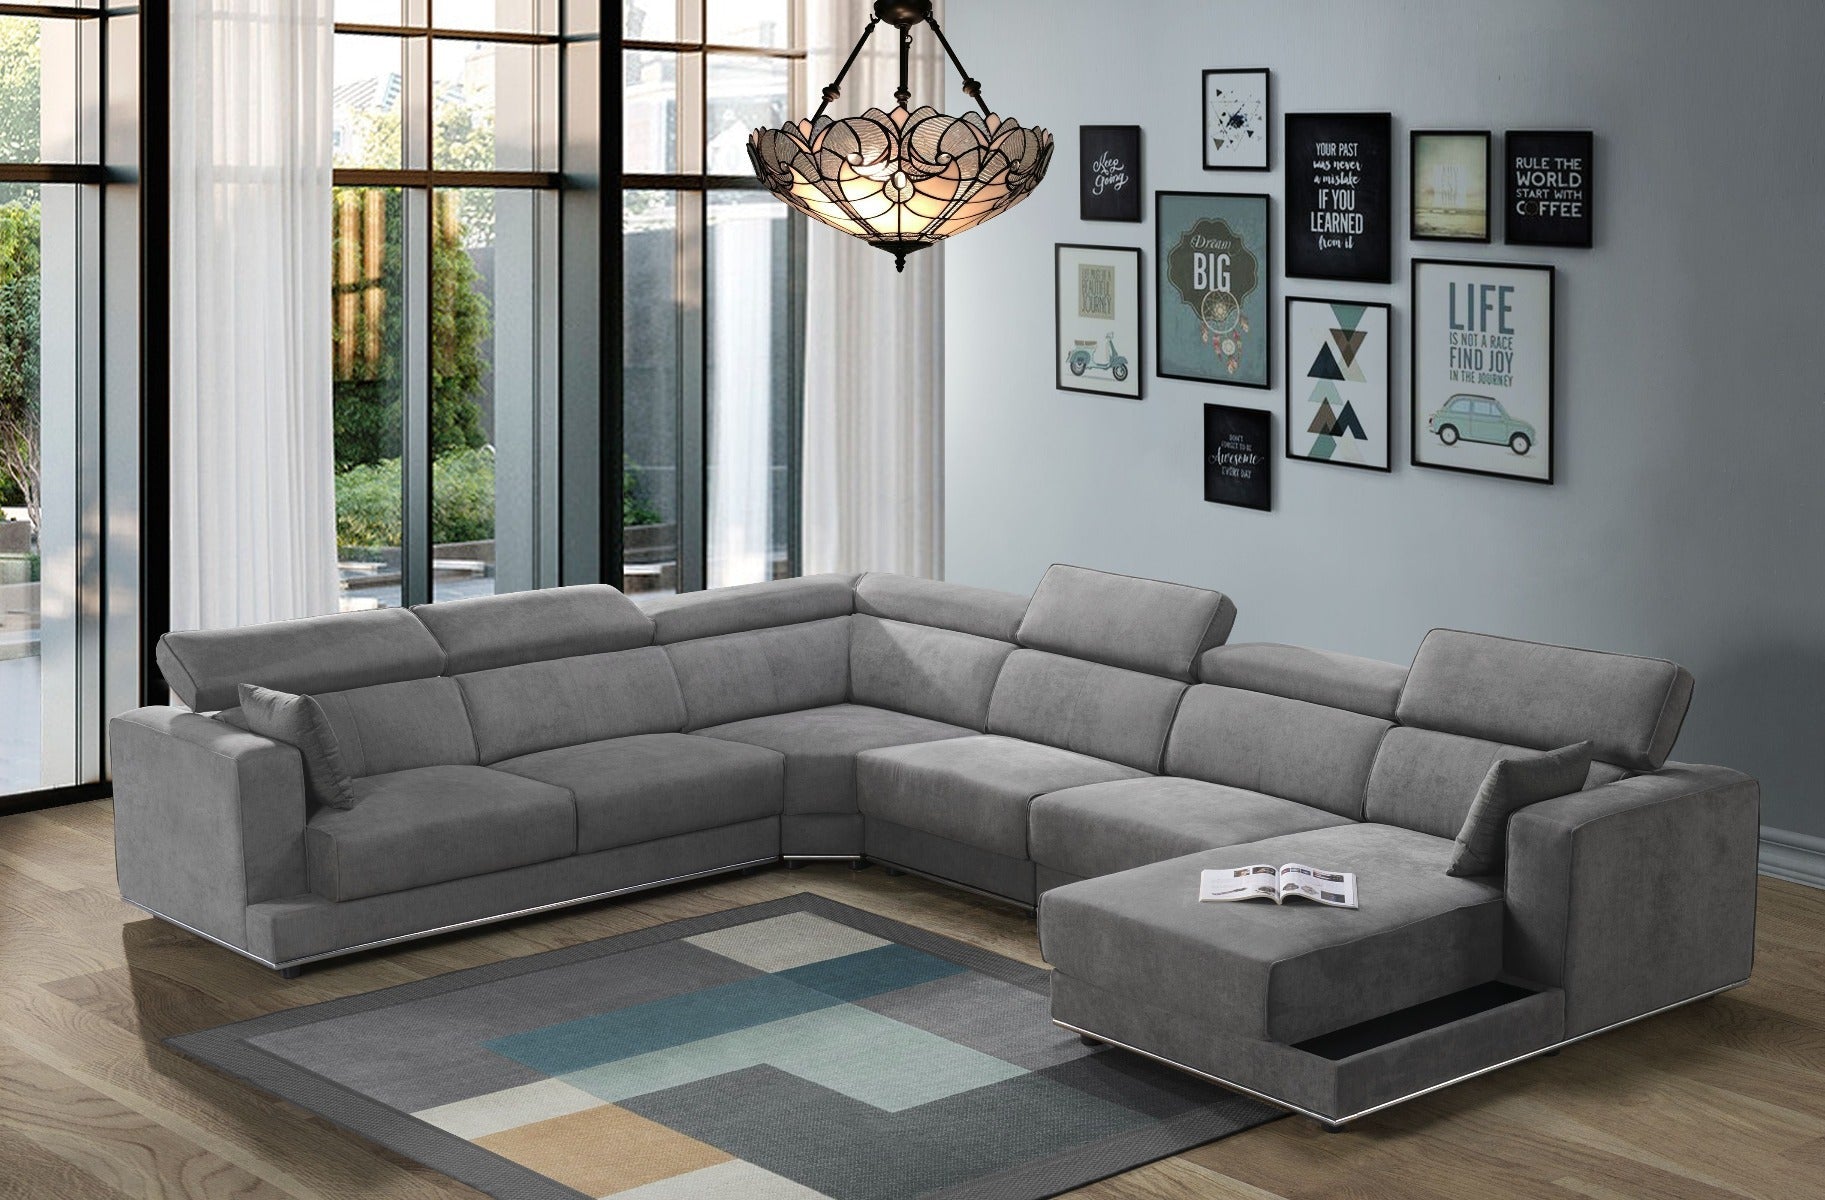 Alwin Modular Sofa Sectional - East Shore Modern Home Furnishings